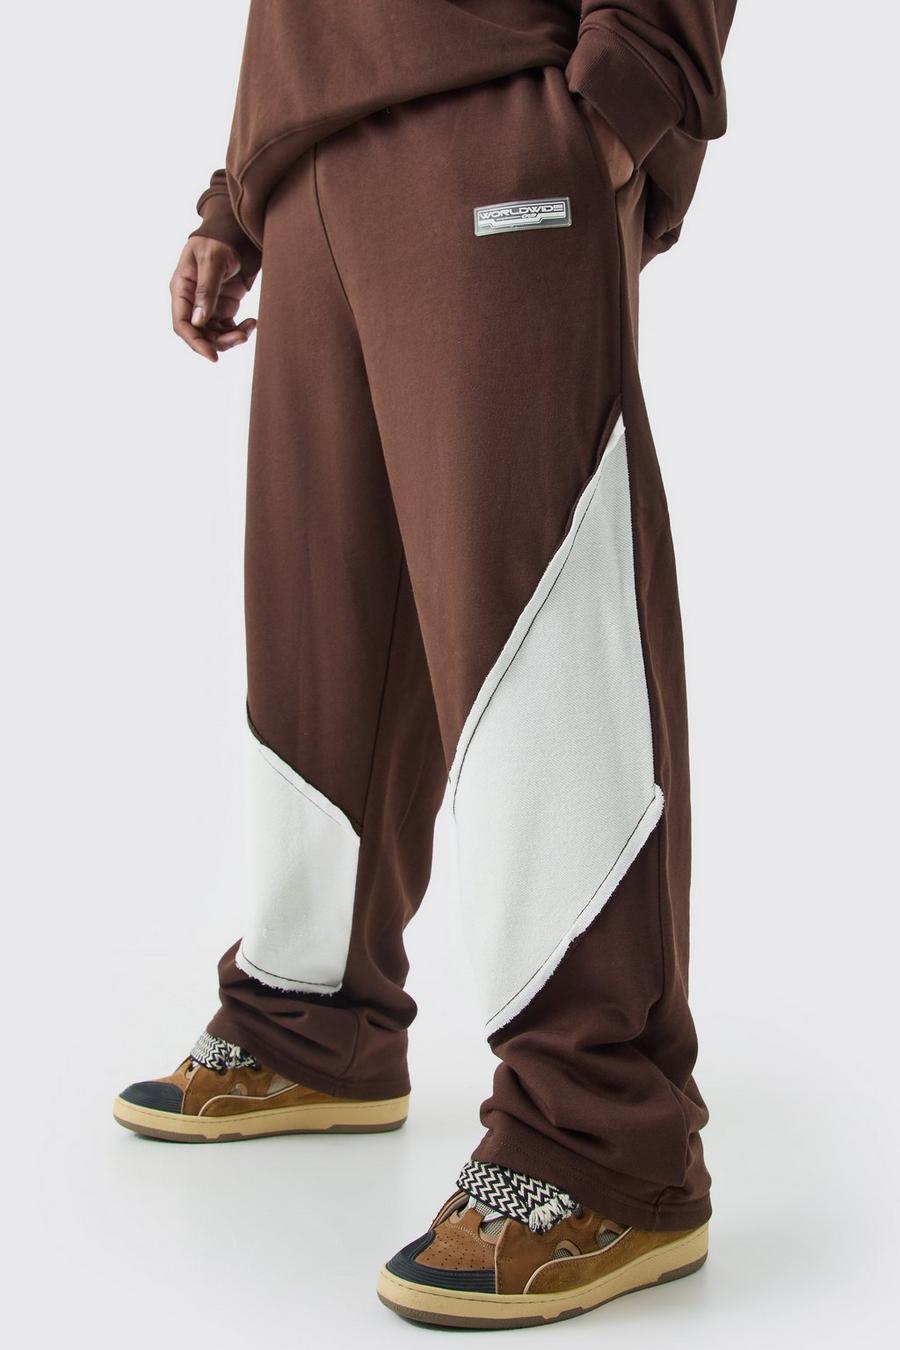 Pantaloni tuta Plus Size rilassati con pannelli arricciati sul retro e fondo grezzo, Chocolate